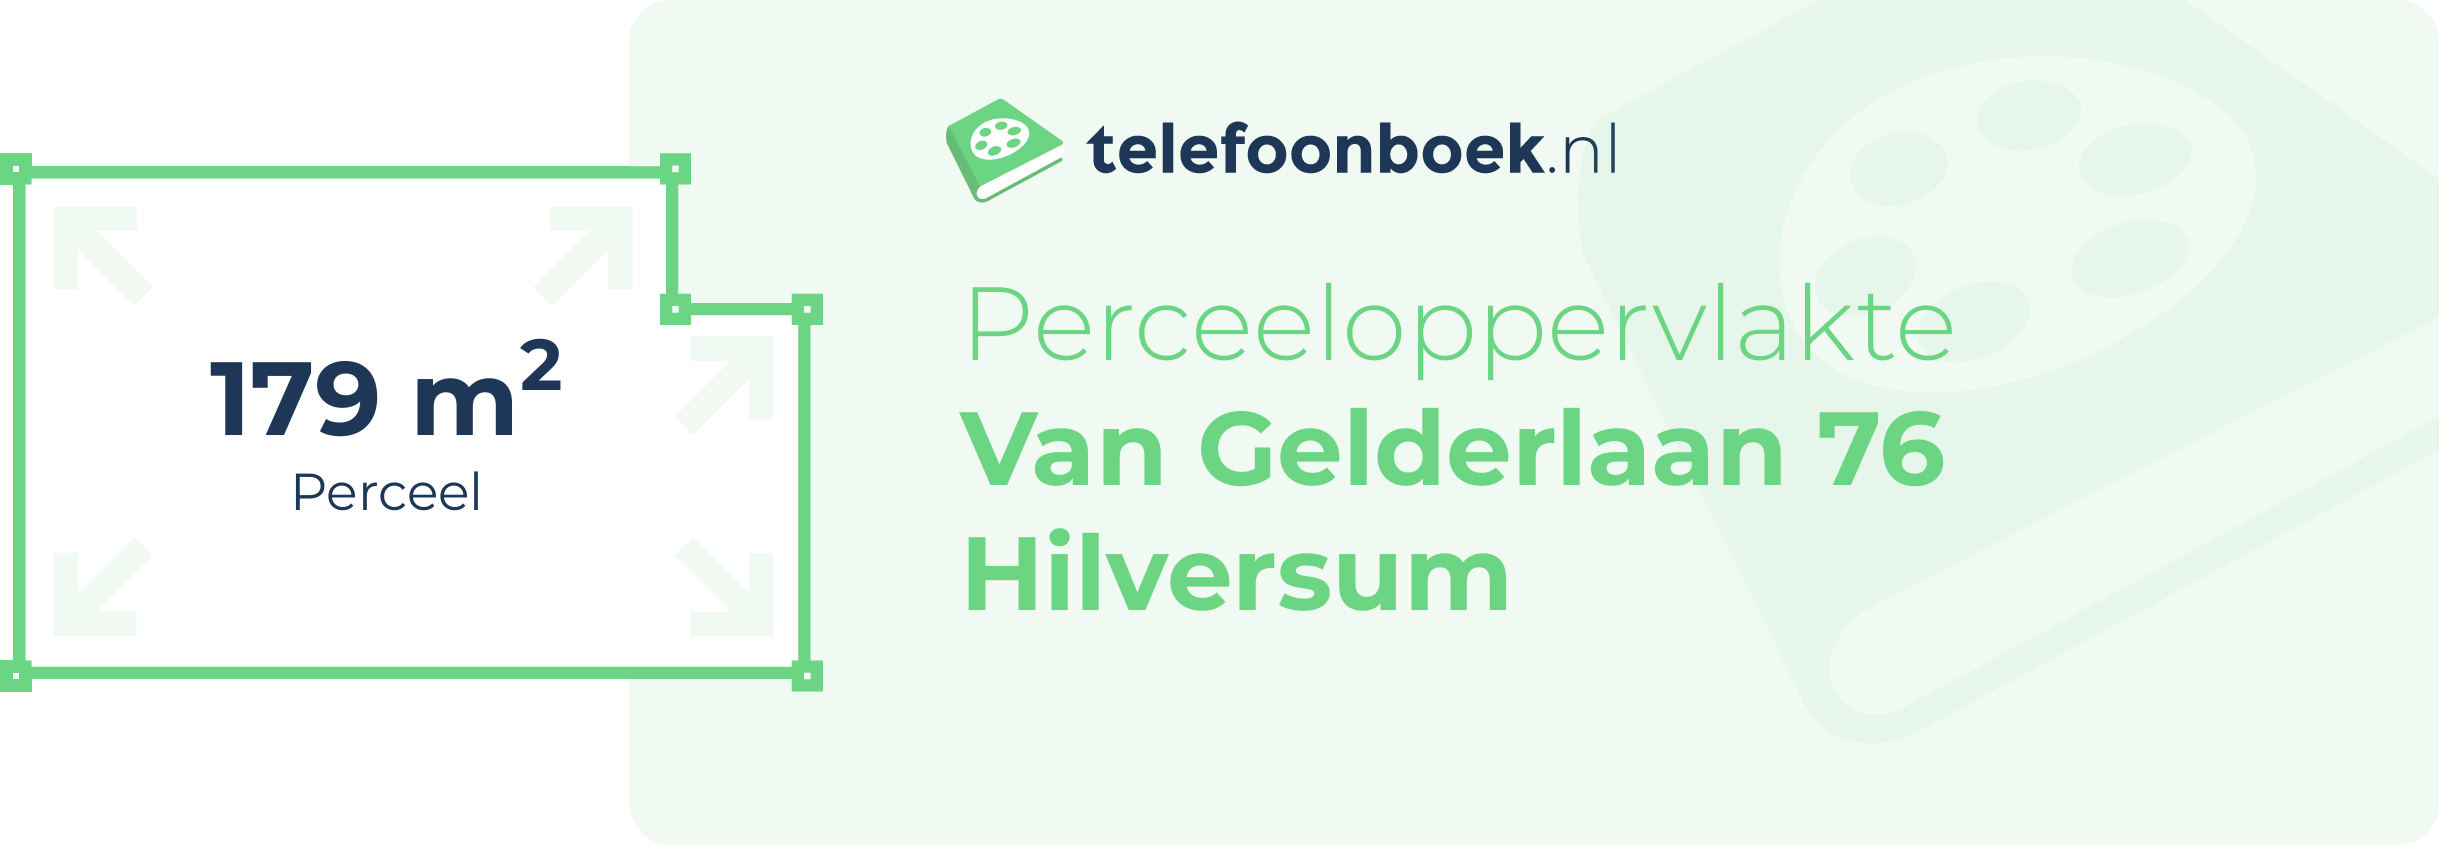 Perceeloppervlakte Van Gelderlaan 76 Hilversum